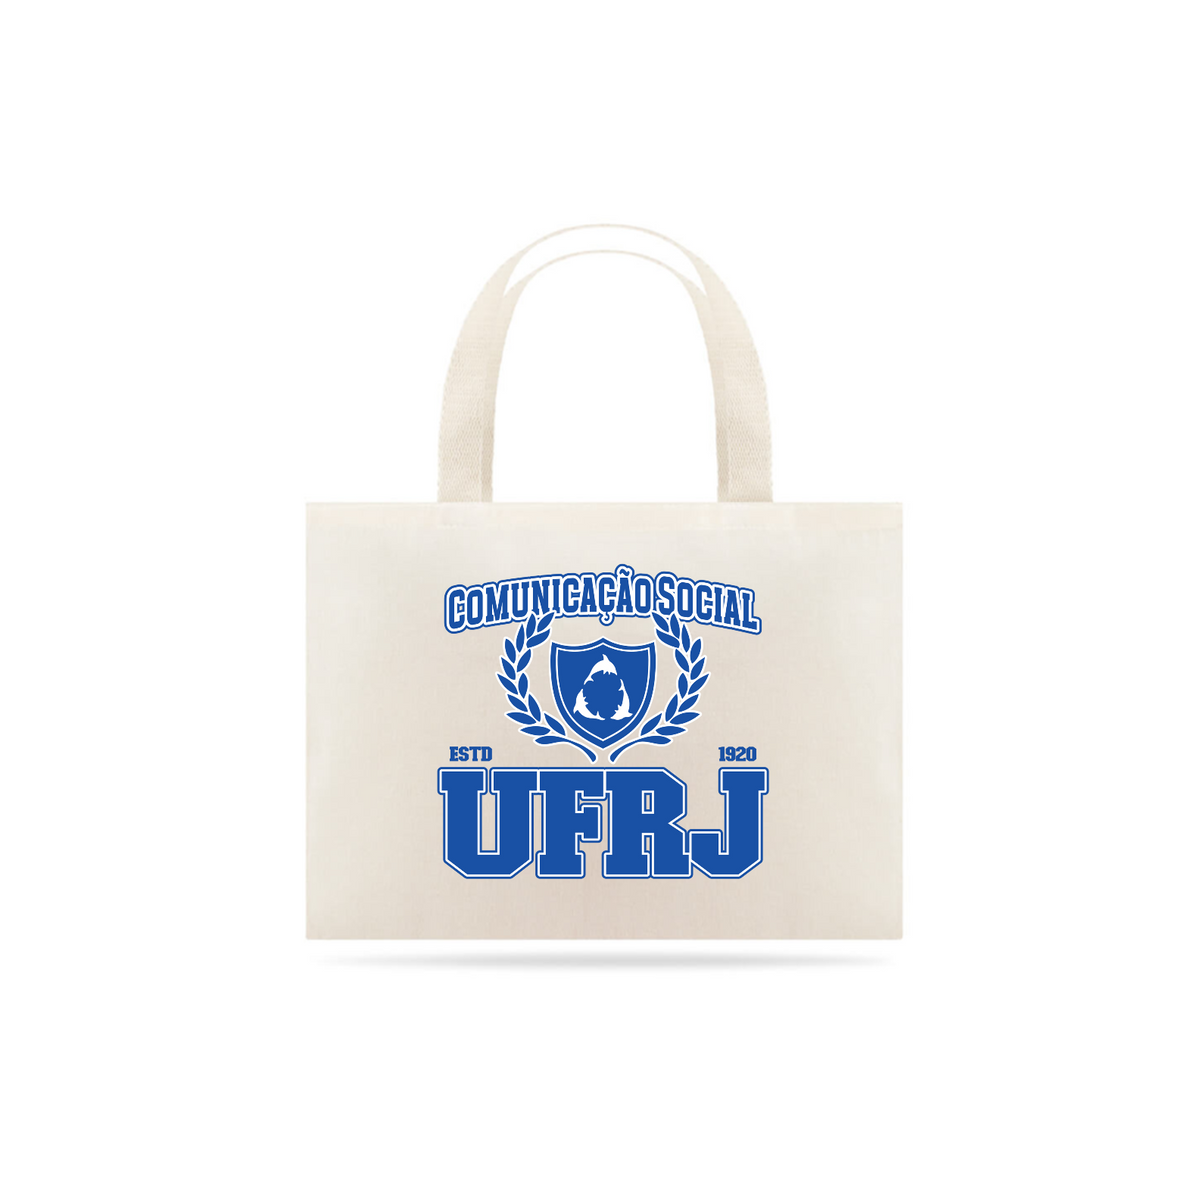 Nome do produto: UniVerso - Ecobag Comunicação Social UFRJ 